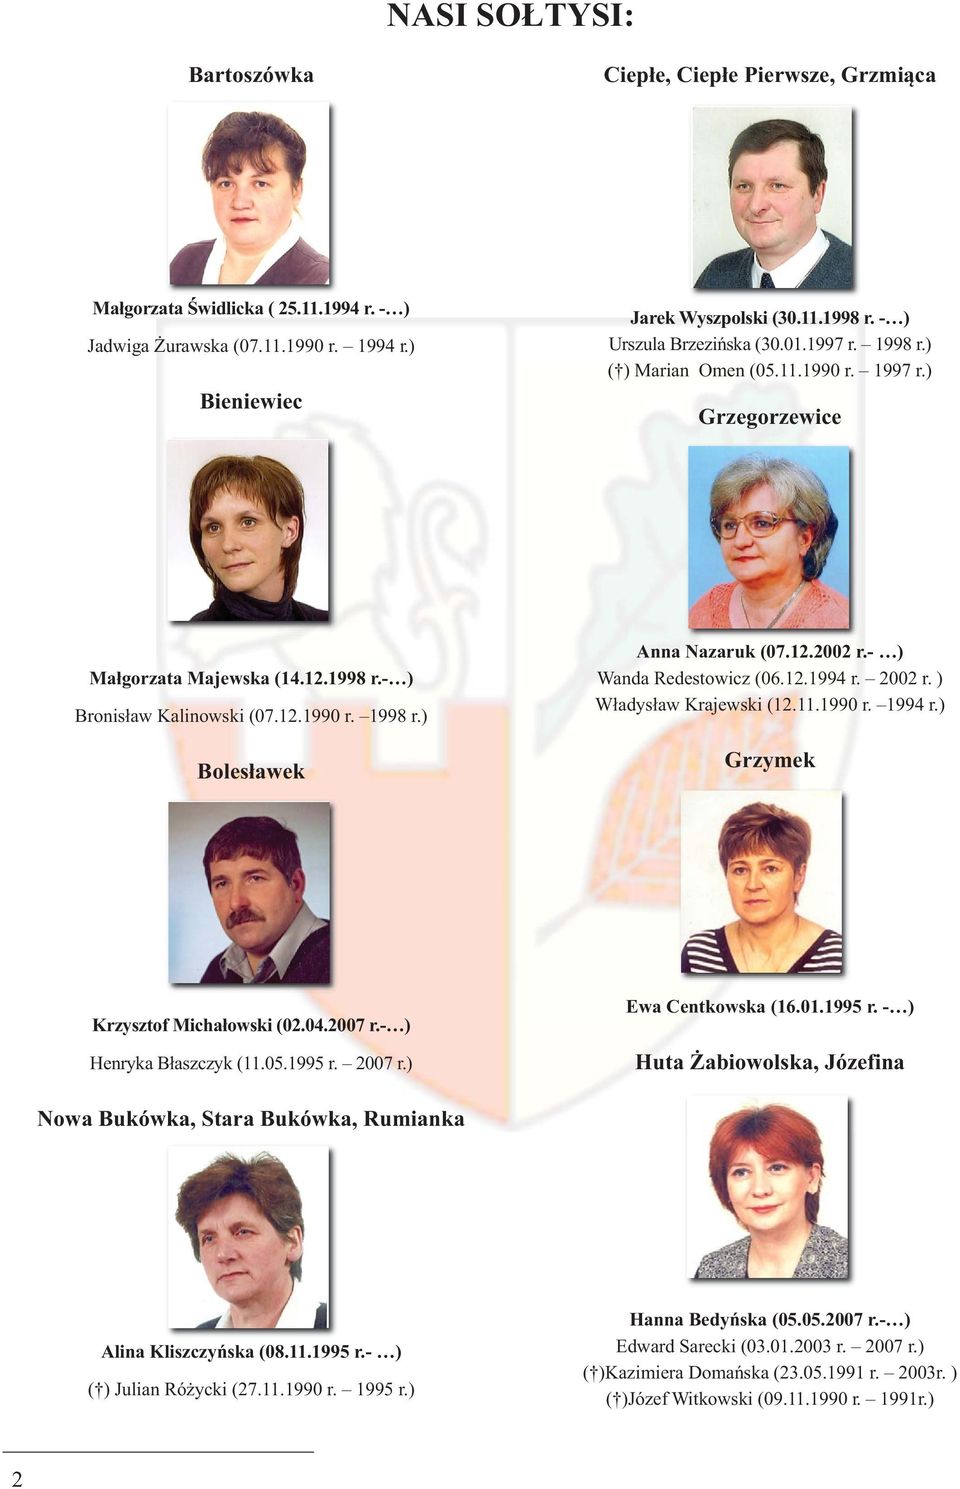 12.2002 r.- ) Wanda Redestowicz (06.12.1994 r. 2002 r. ) Władysław Krajewski (12.11.1990 r. 1994 r.) Grzymek Krzysztof Michałowski (02.04.2007 r.- ) Henryka Błaszczyk (11.05.1995 r. 2007 r.